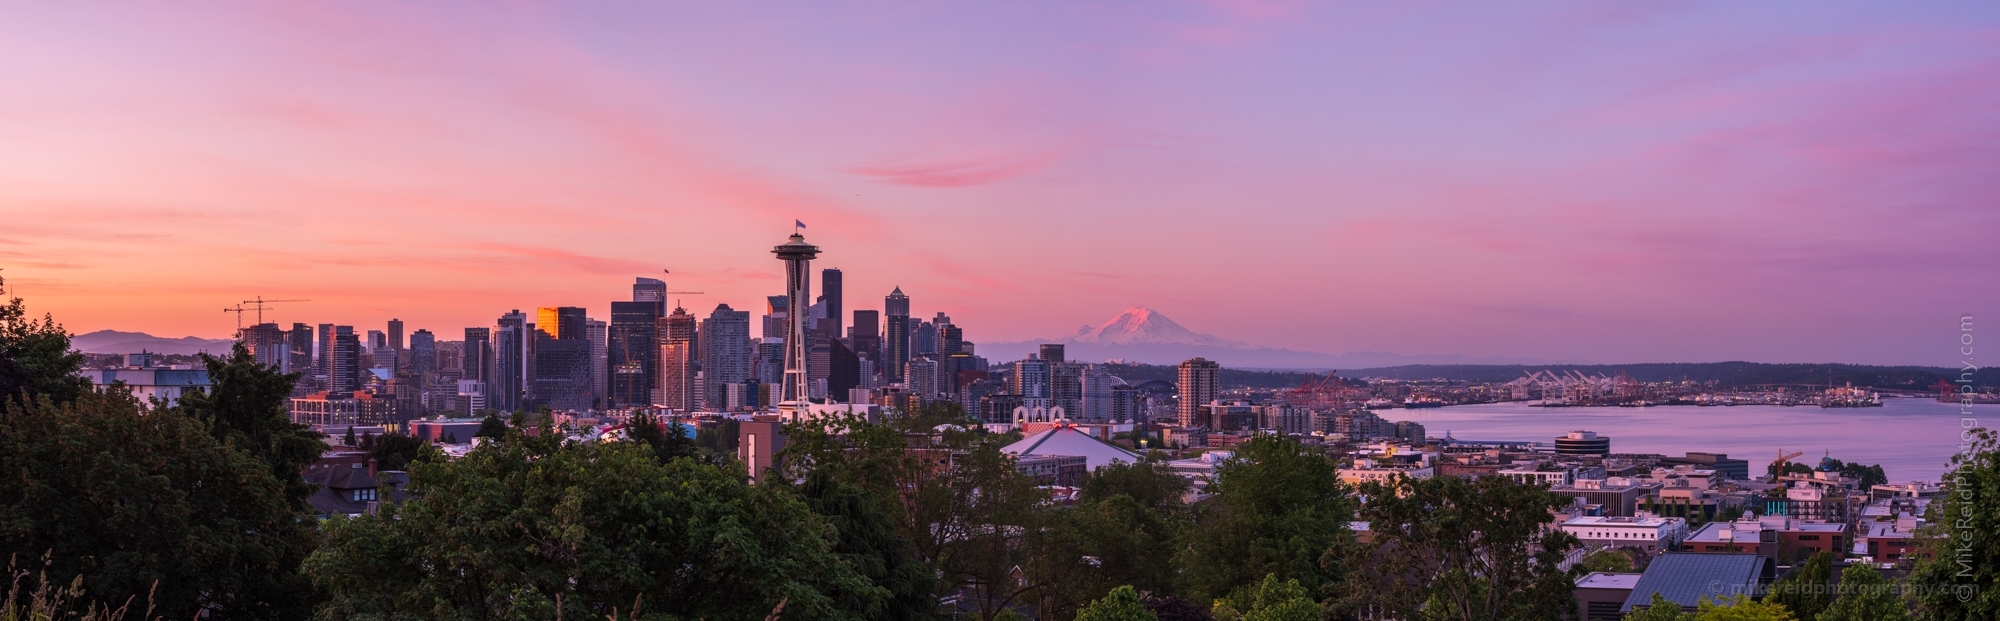 Seattle Kerry Park Dawn Pink Panorama.jpg 